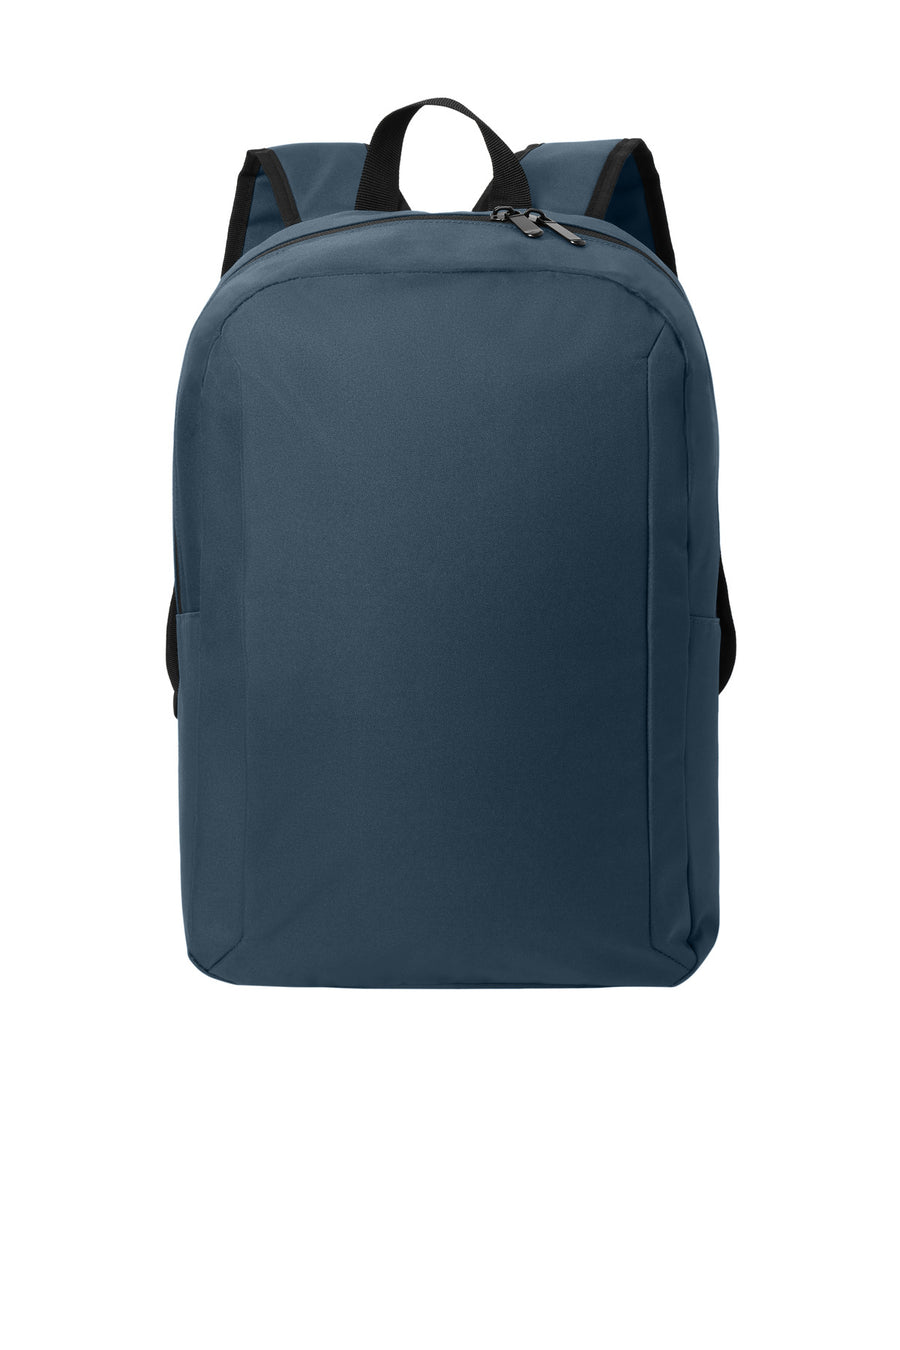 Port Authority¬Æ Modern Backpack BG231